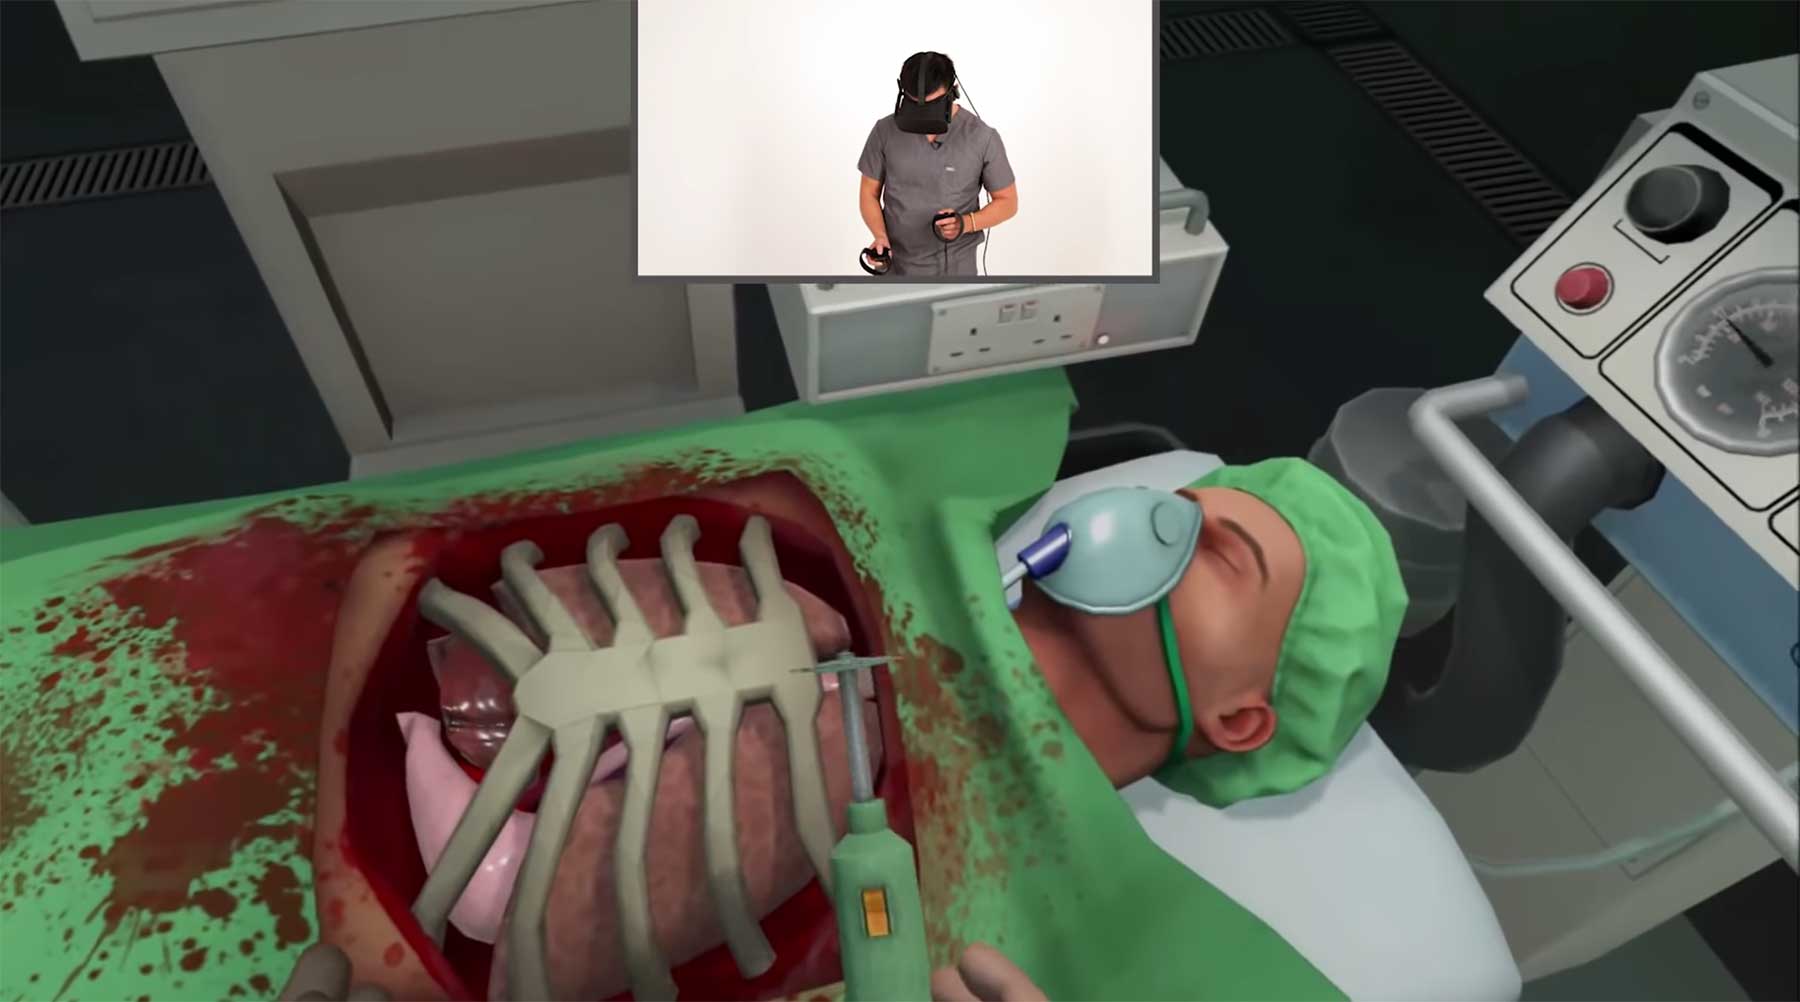 Ein Chirurg spielt den "Surgeon Simulator" surgeon-plays-surgeon-simulator 